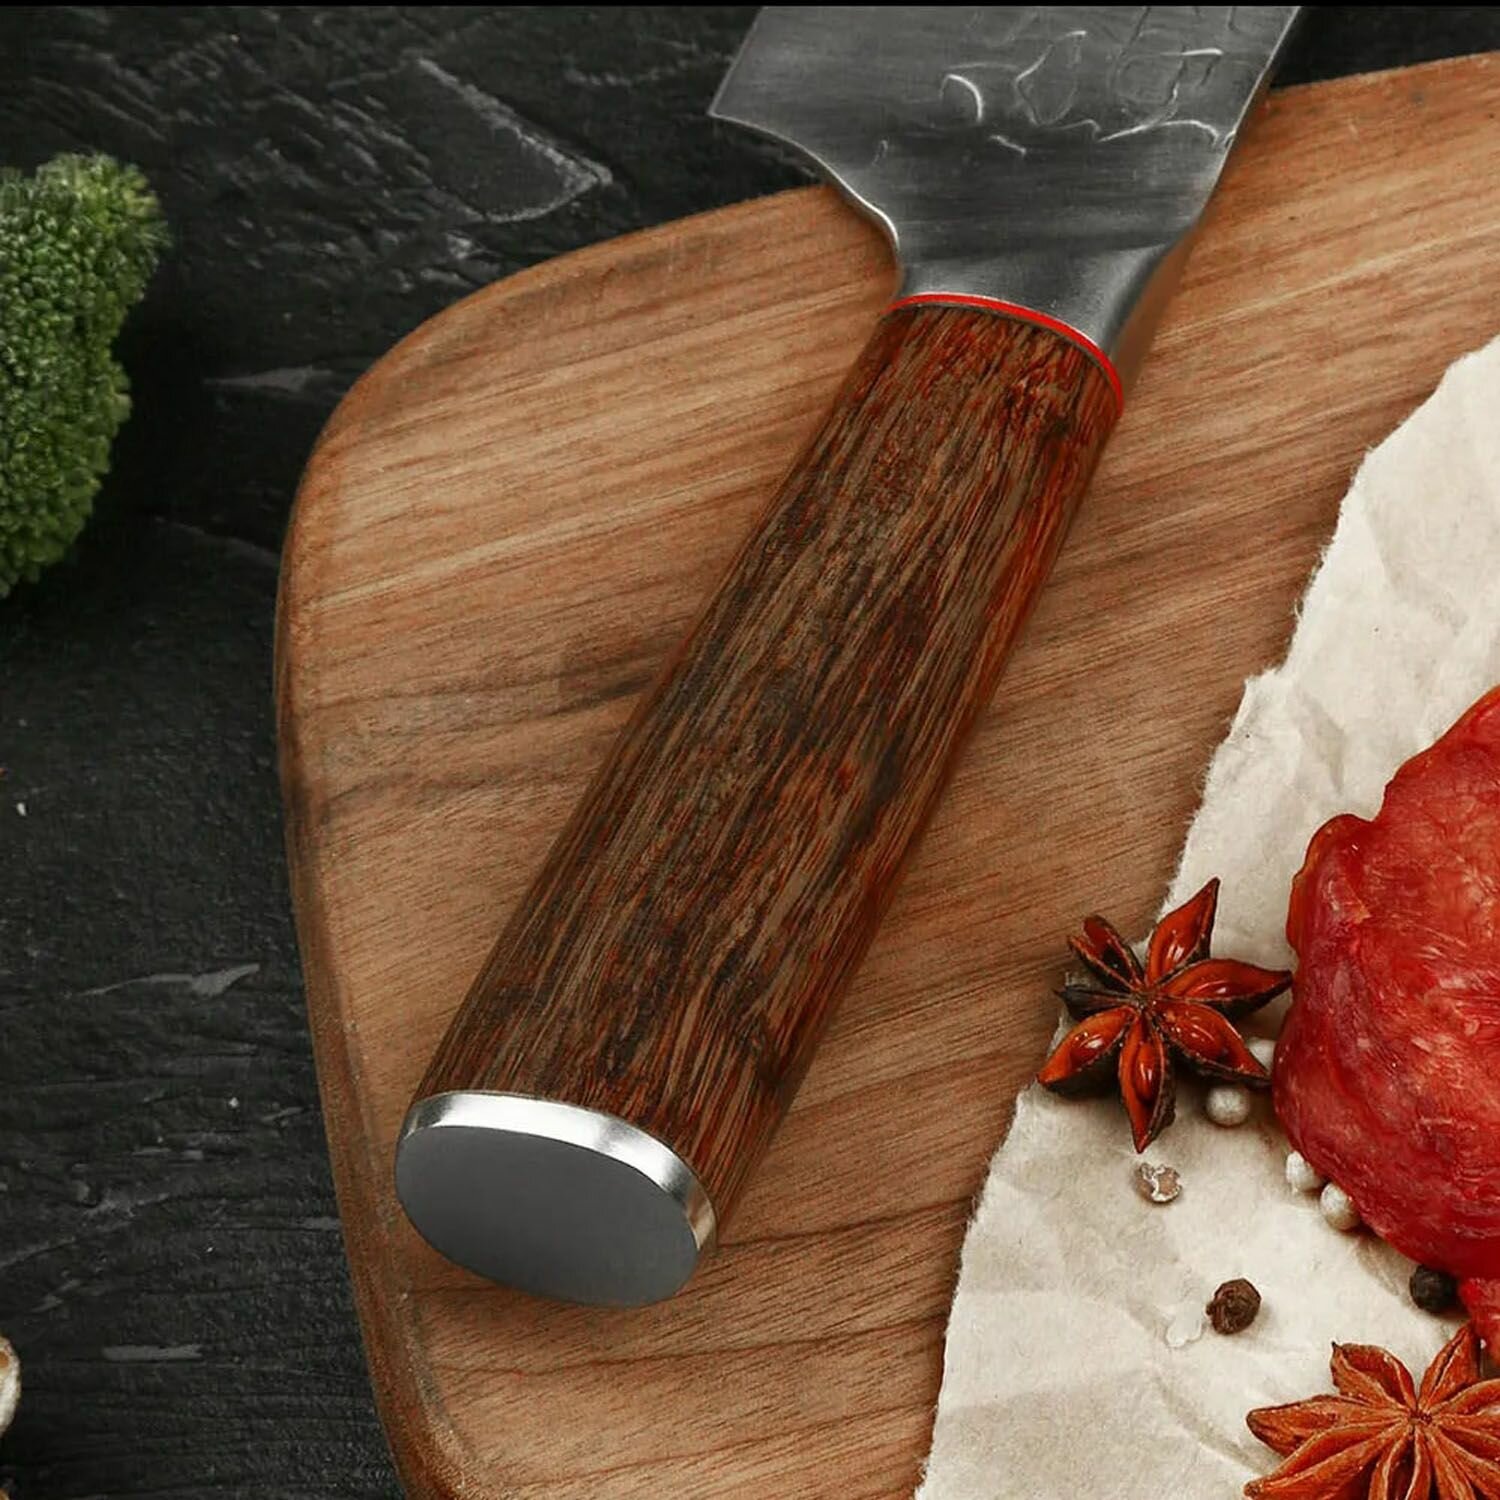 Kimatsugi / Японский поварской кухонный нож Киритсуке. Серия Totori. Нержавеющая сталь AUS-8. Длина лезвия 206 мм. В подарочной коробке